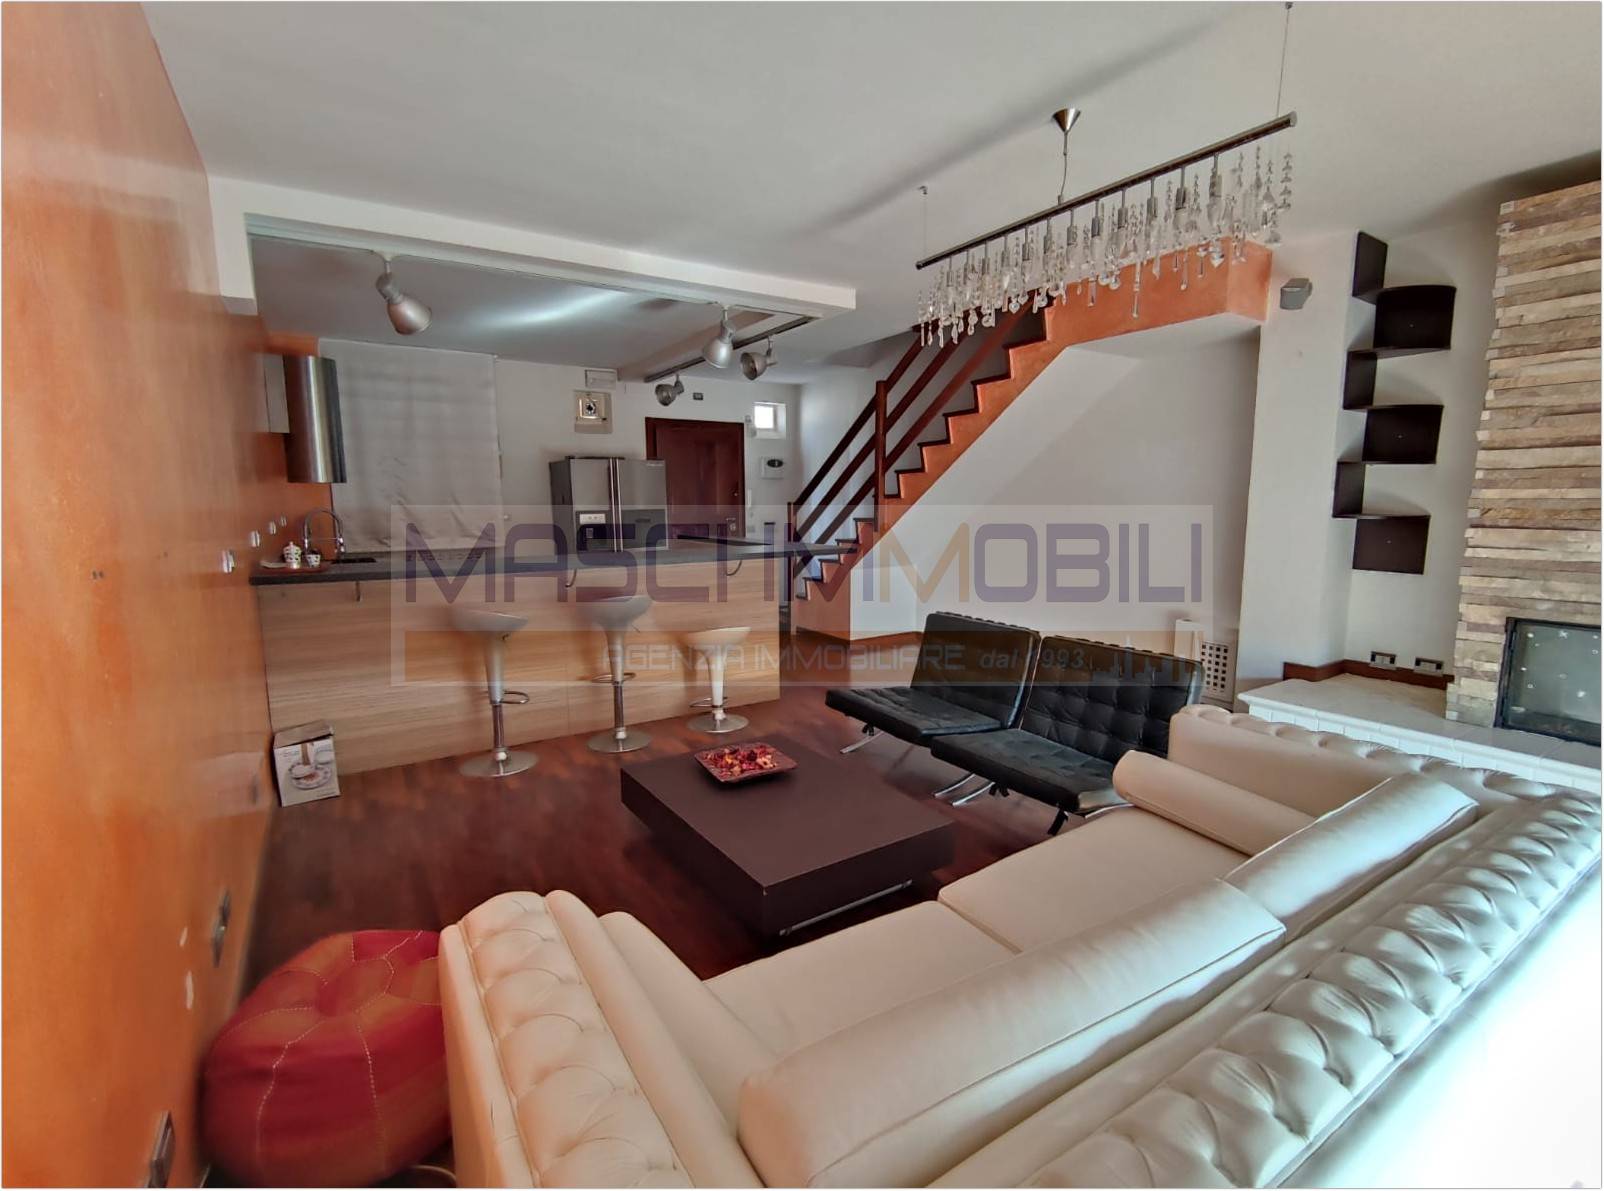 Appartamento in vendita a Fiano Romano, 3 locali, prezzo € 155.000 | PortaleAgenzieImmobiliari.it